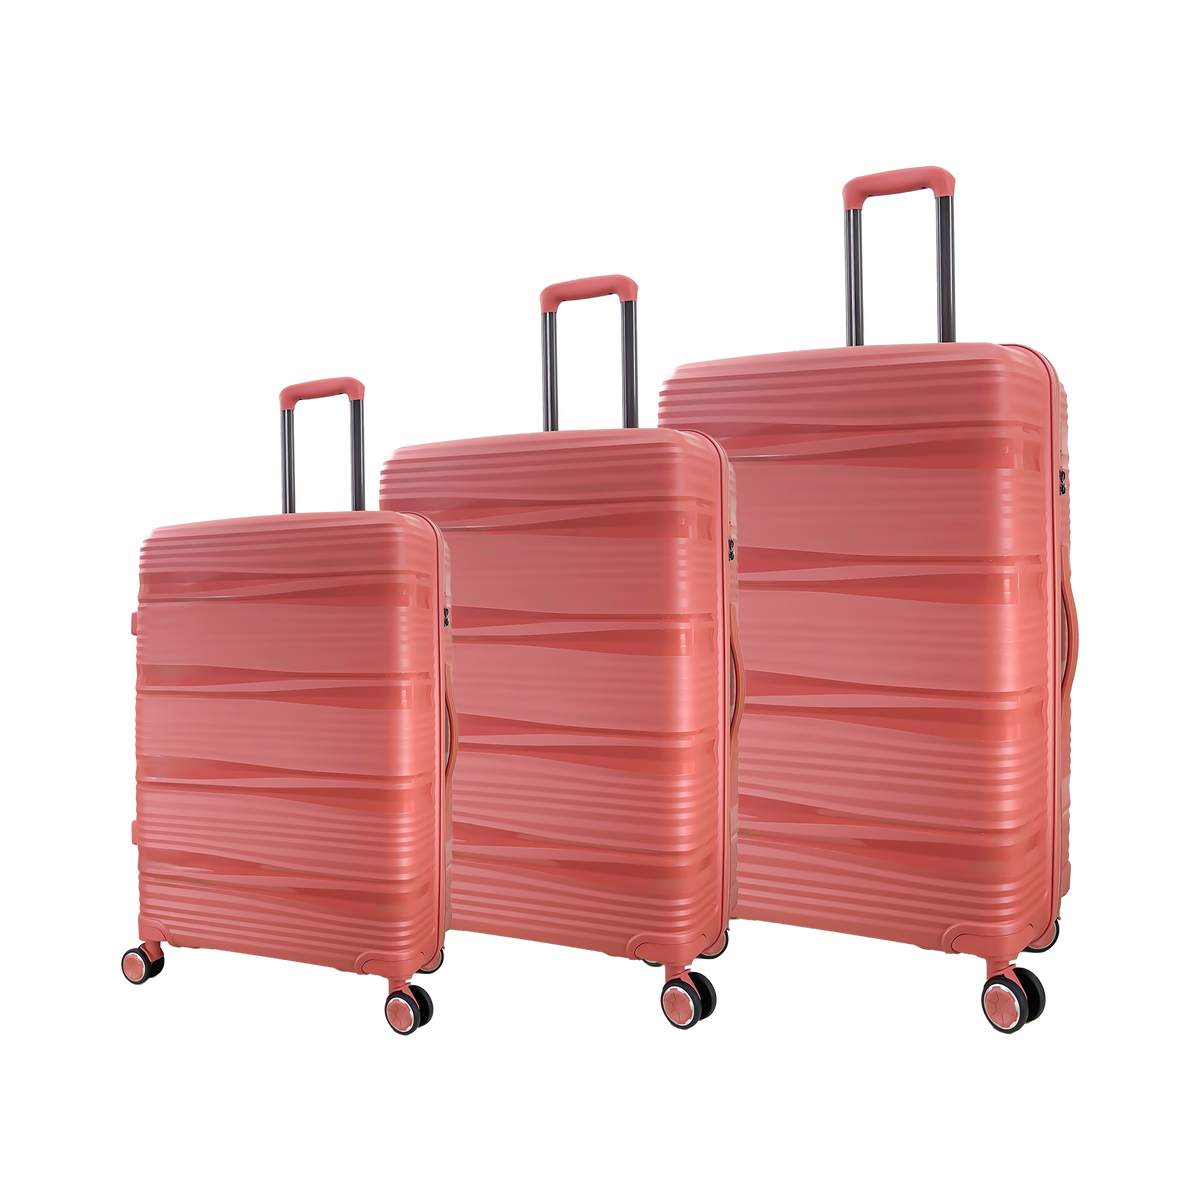 Ensemble de 3 valises à roulettes Ormi Insline en polypropylène souple et léger avec serrure TSA - Petite, Moyenne, Grande